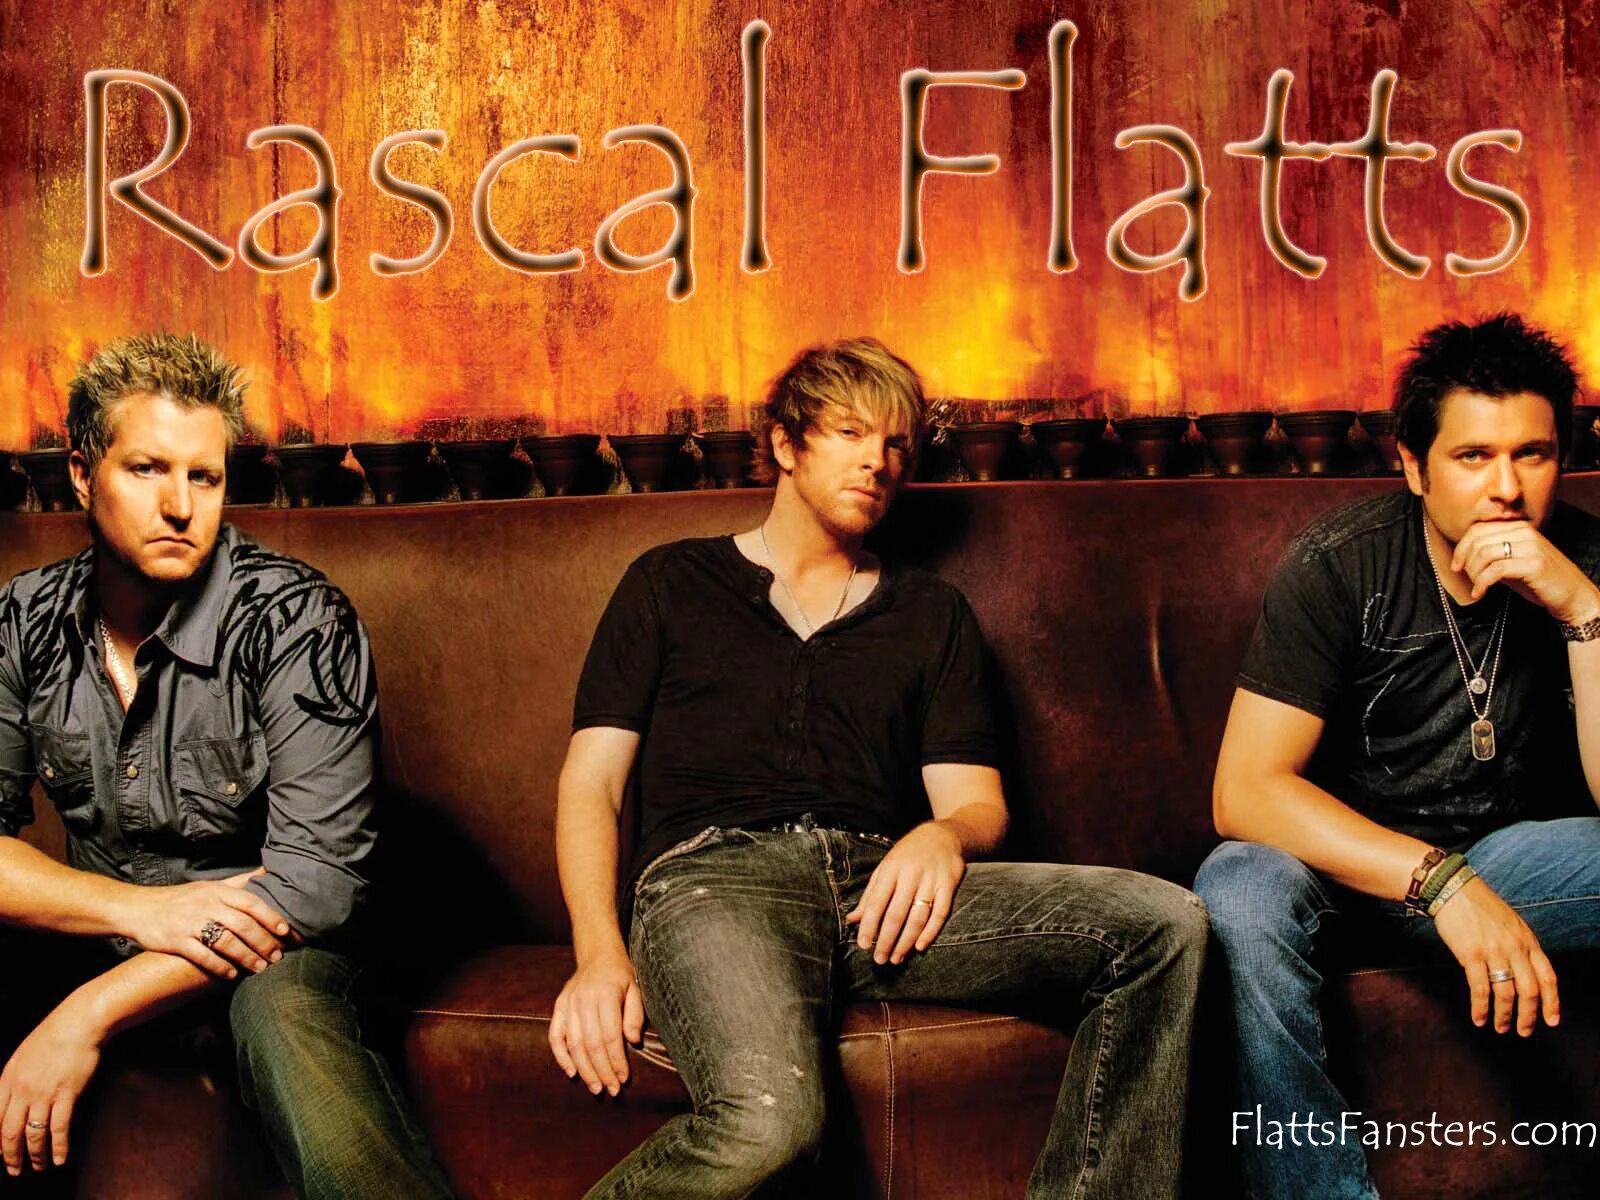 Rascal flatts life is. Rascal Flatts. День Rascal Flatts (Rascal Flatts Day). Группа Rascal Flatts ВКОН. Rascal Flatts Life is a Highway обложка.